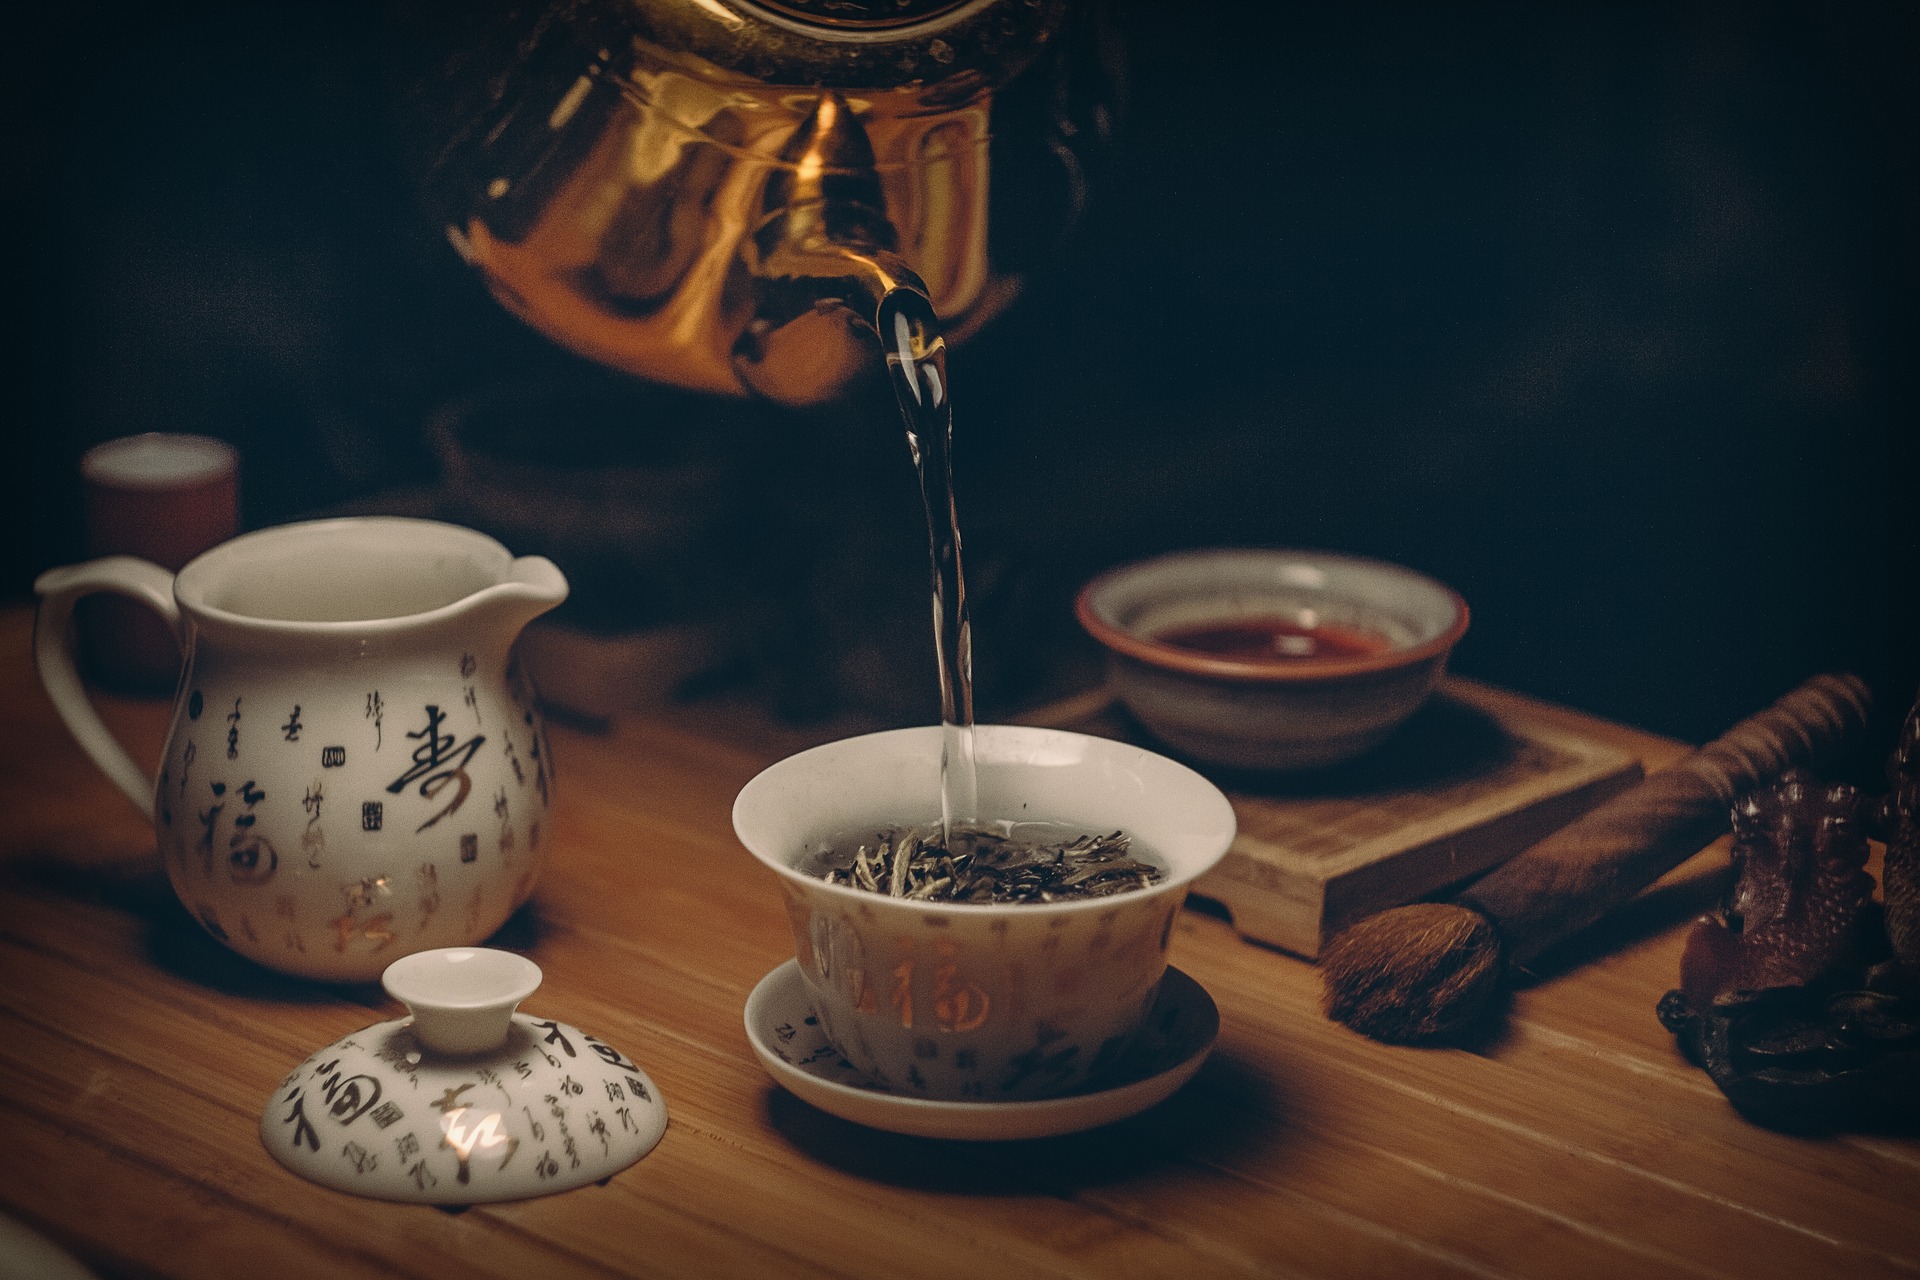 茶裡含有咖啡因，會造成健康問題，例如焦慮、失眠等。